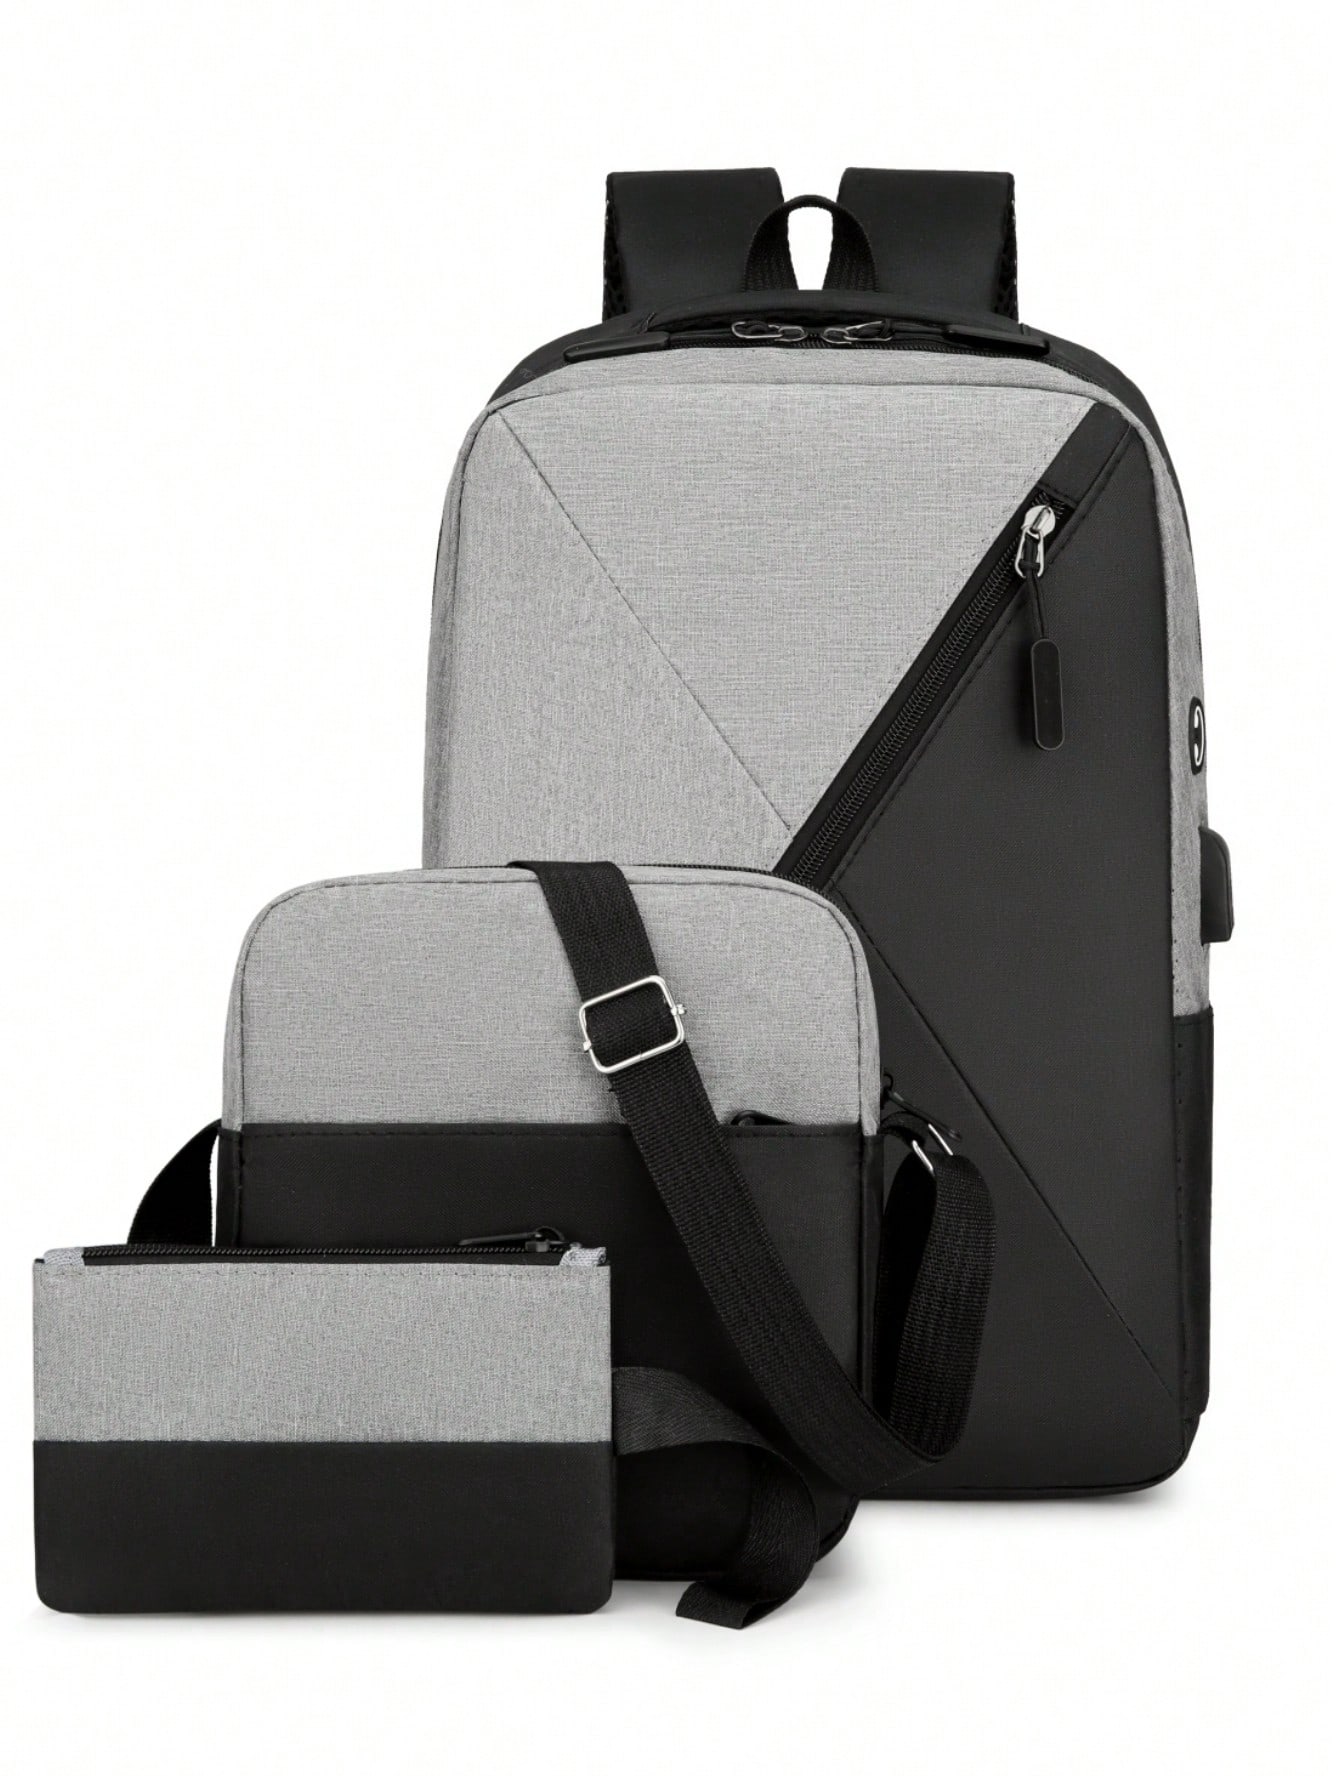 рюкзак для путешествий на открытом воздухе объемом 40 л темно синий Мужской рюкзак с несколькими отделениями для путешествий на открытом воздухе, светло-серый